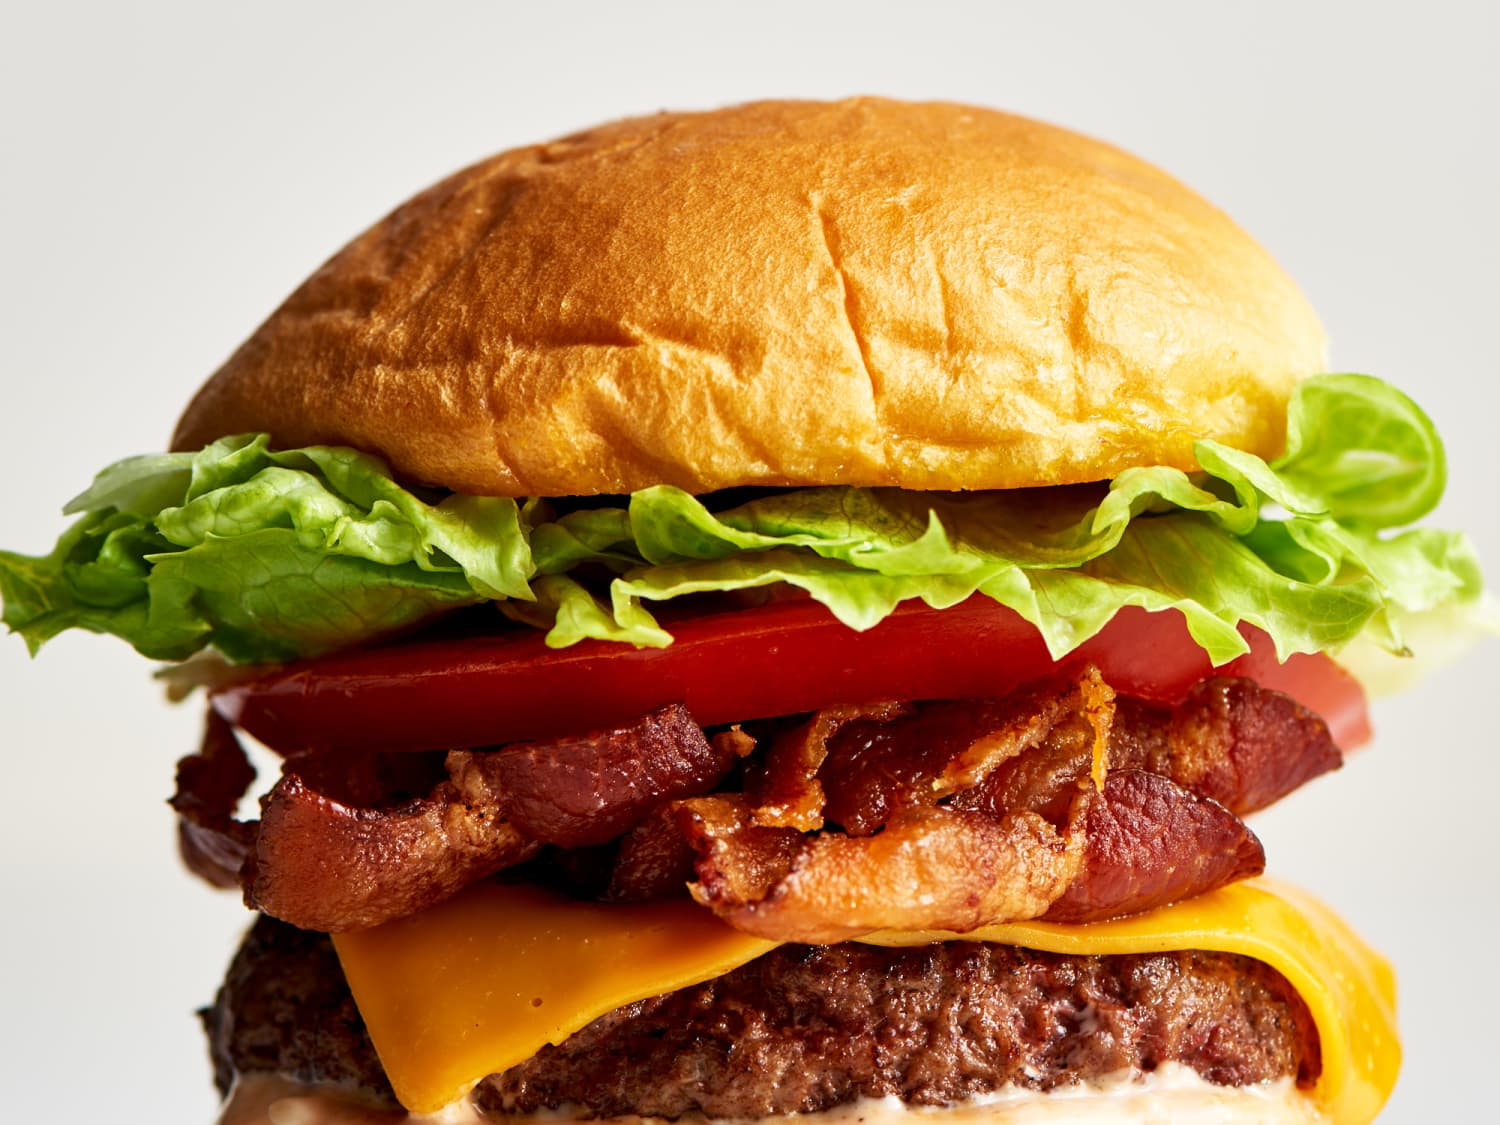 Classic Bacon Cheeseburger - Simply Delicious